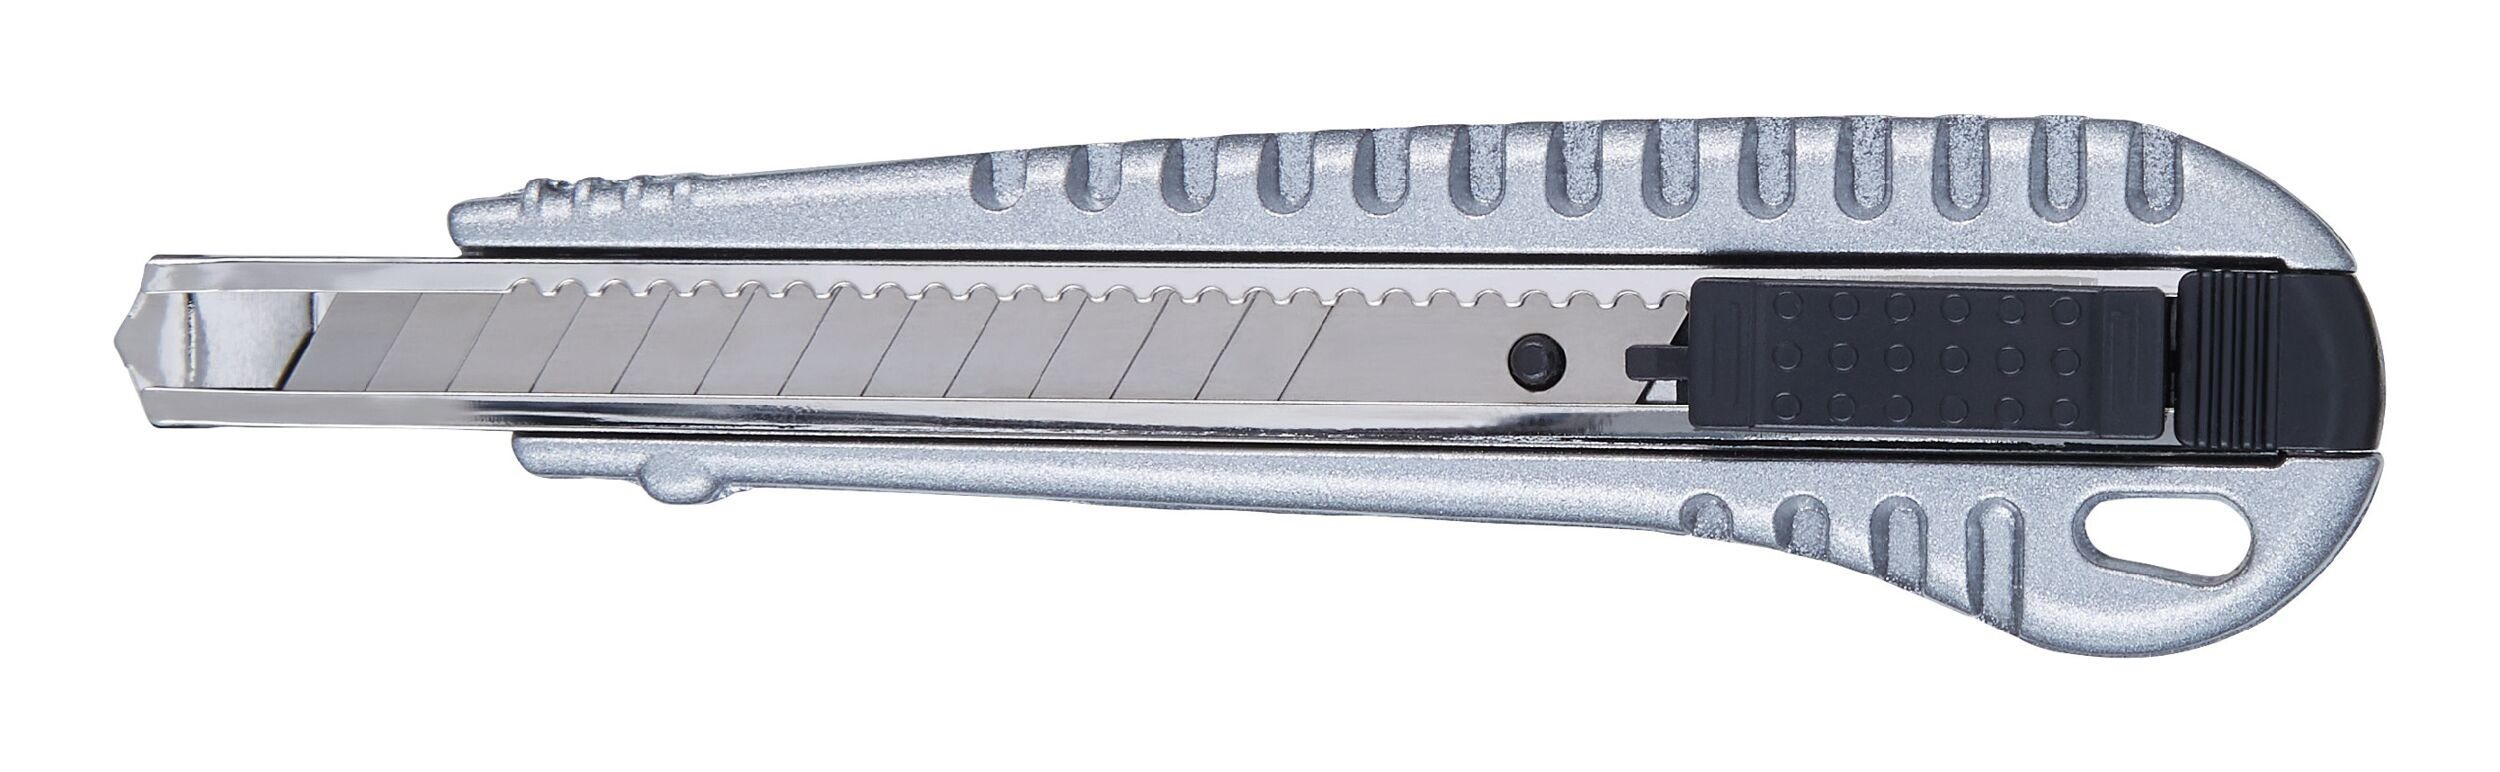 Cuttermesser mit 9 Cutter, fortis Klinge Metall mm 1